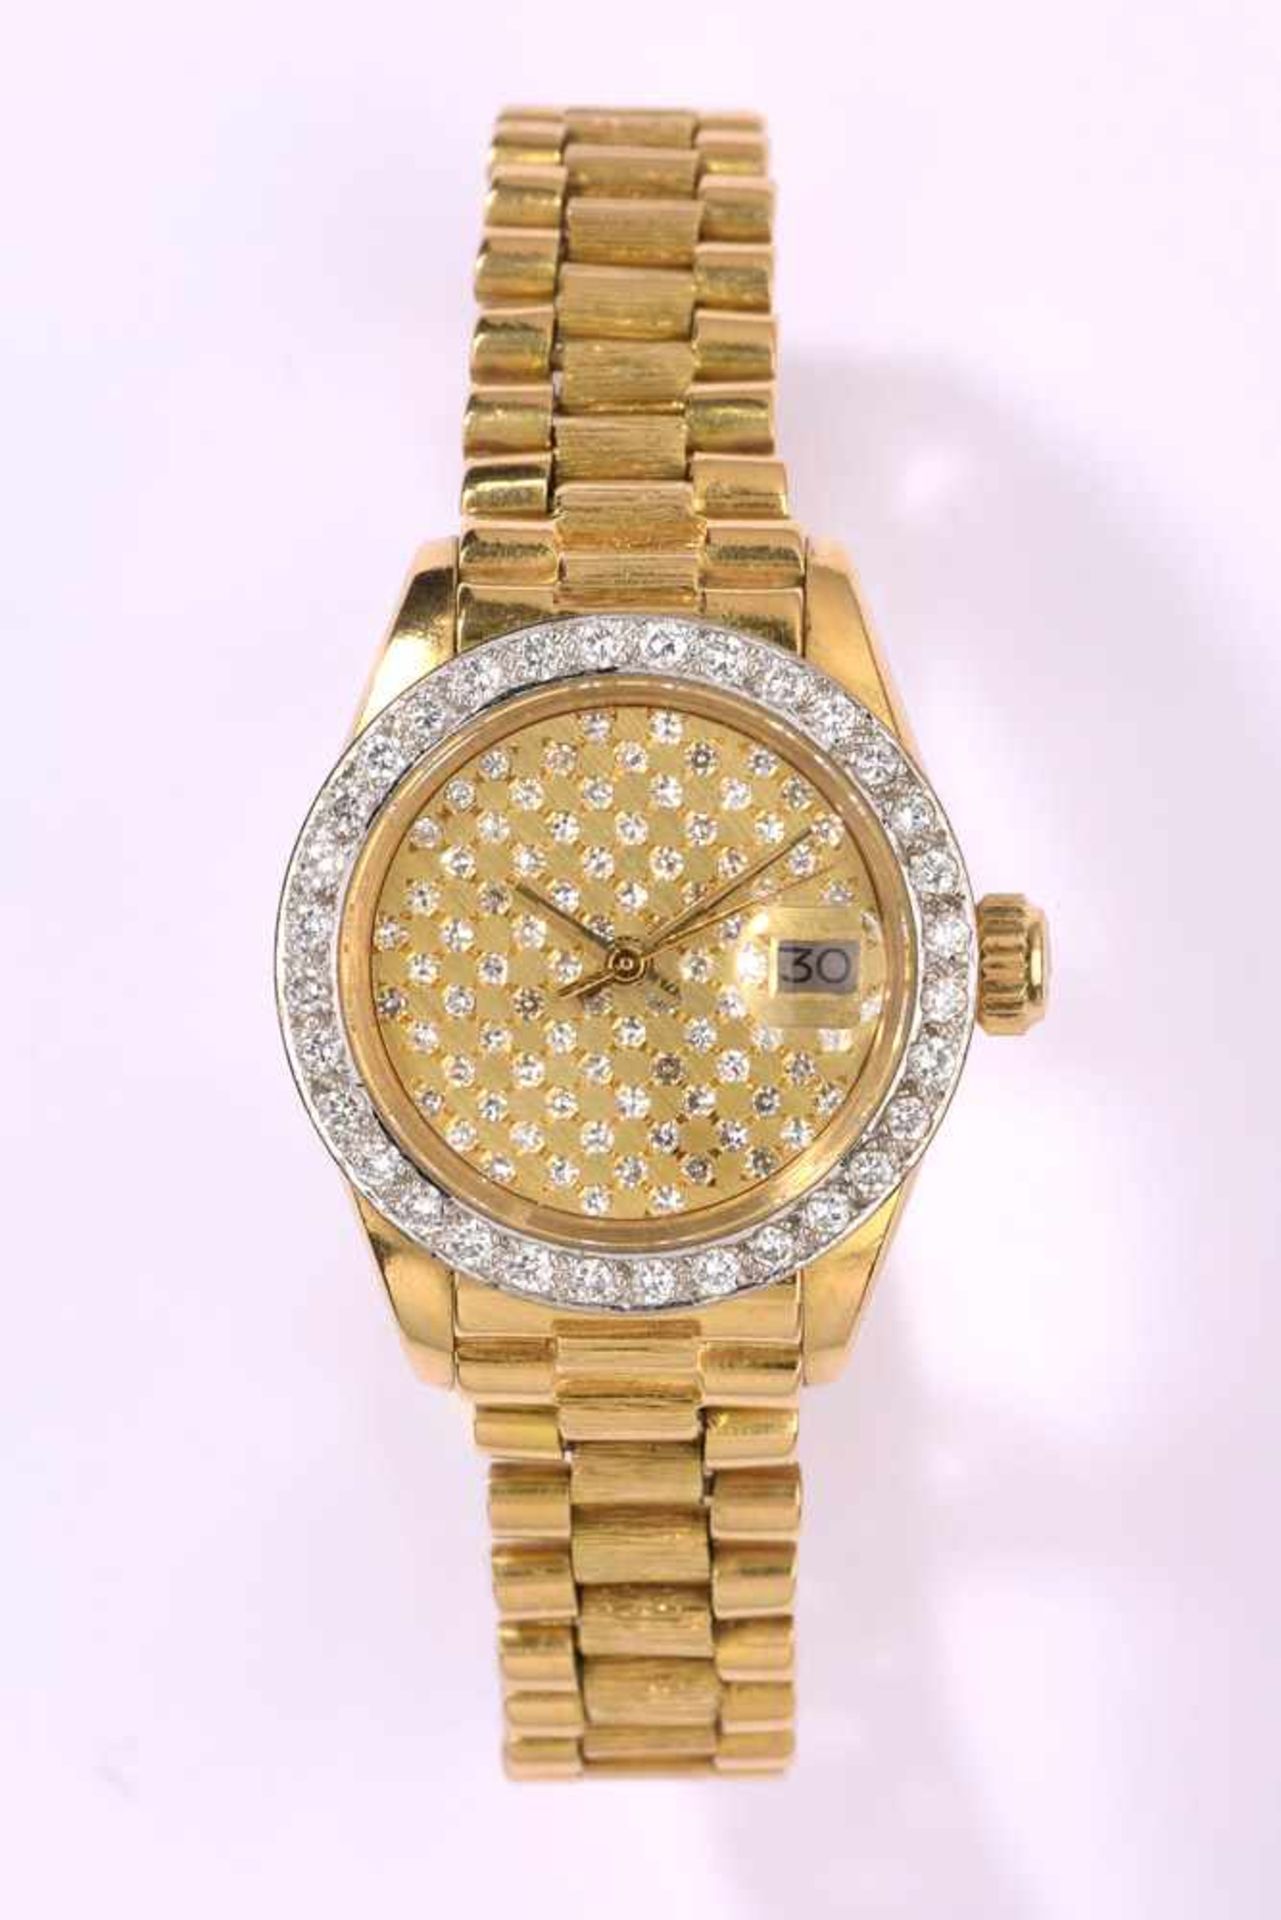 Damenarmbanduhr von Rolex, Oyster-Datejust750- Gelbgoldgehäuse und -armband. Brillantlunette und